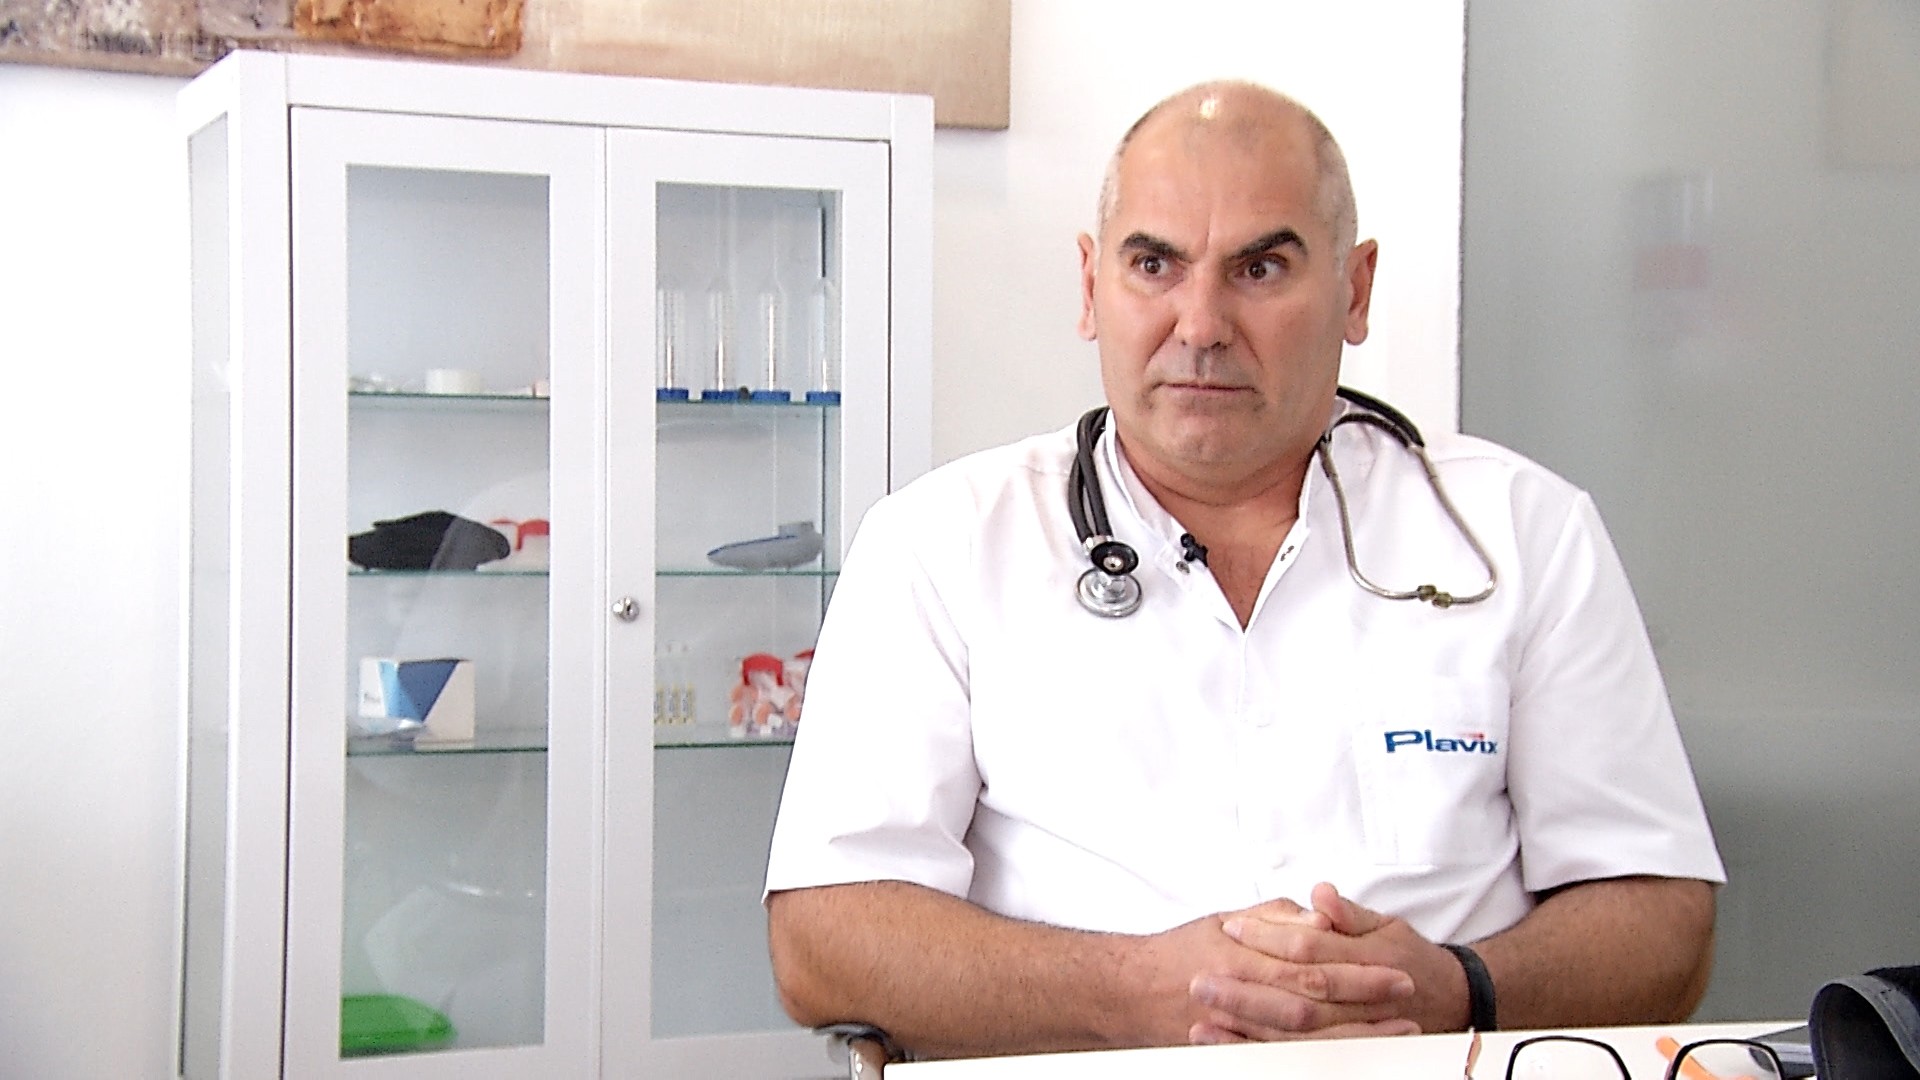 Ρουμάνοι γιατροί, καθαρή υγεία για τους Ισπανούς.  Ο Cristian Boteanu ειδικεύτηκε και εργάστηκε στη Ρουμανία, αλλά απολύθηκε από τη γραφειοκρατία: «Ήταν η μισή δουλειά»